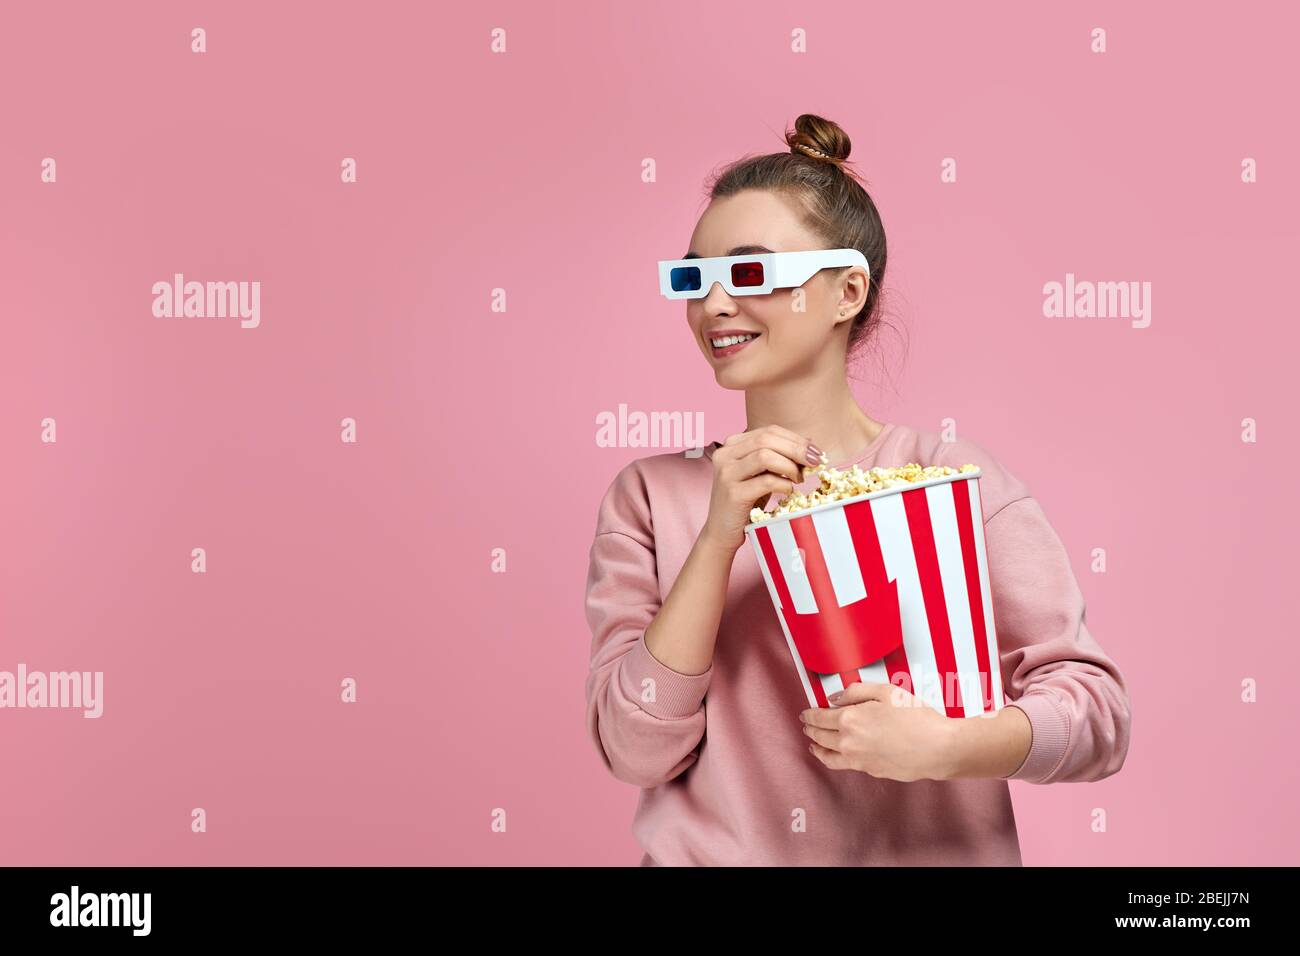 bella donna caucasica con occhiali 3d rosso-blu e mangiare popcorn dal  secchio mentre si guarda un film isolato su sfondo rosa. spazio copia Foto  stock - Alamy